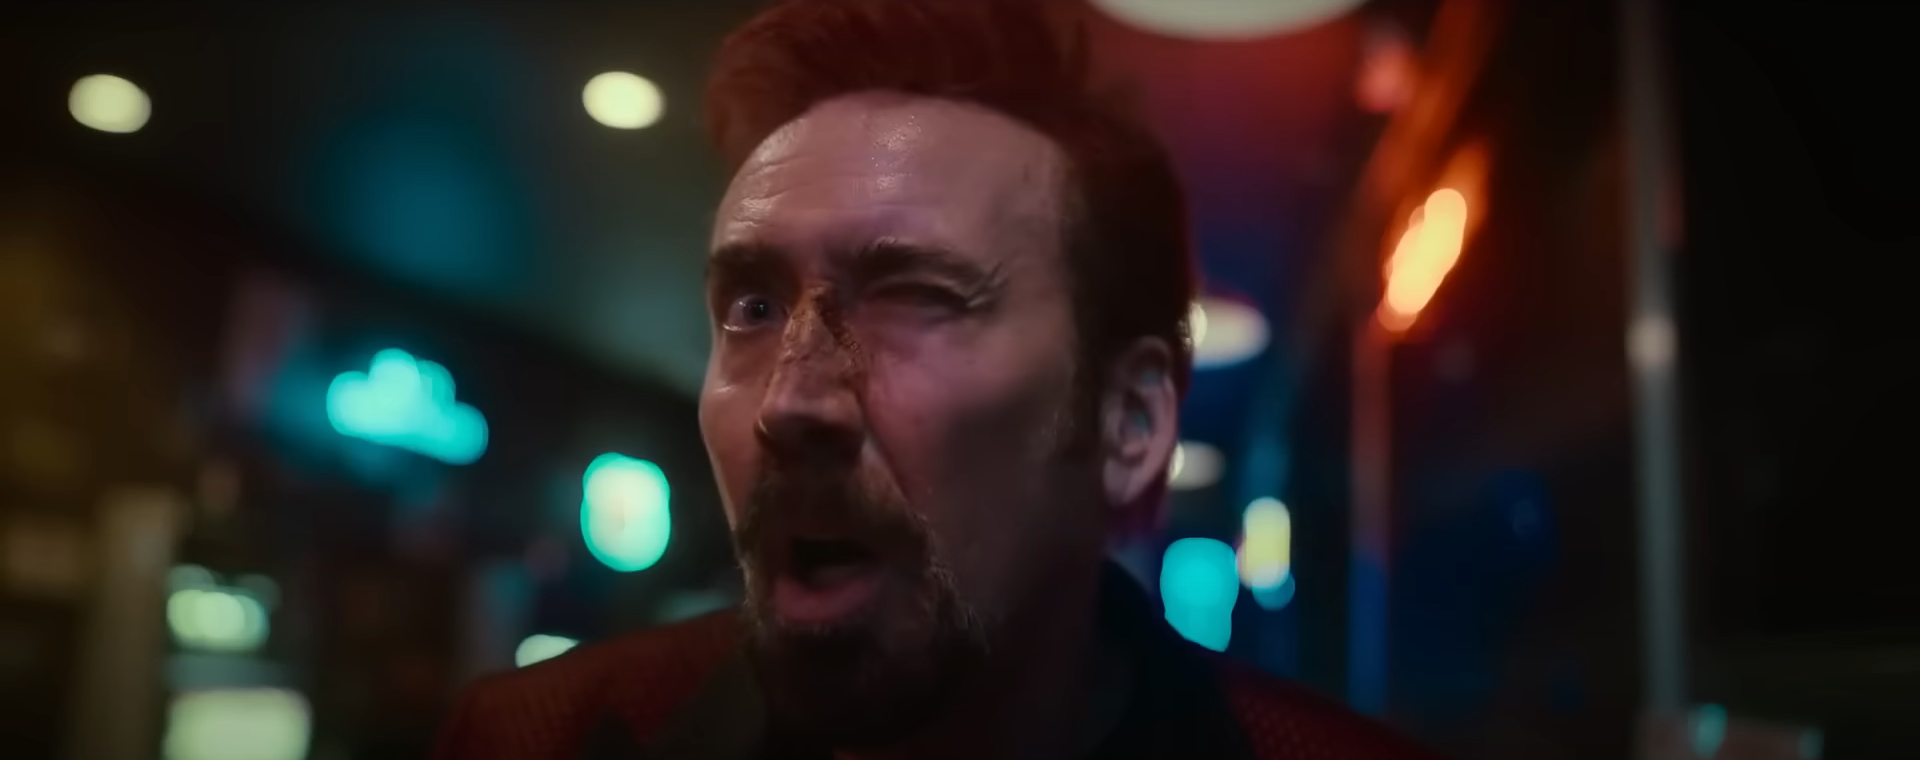 Sympathy for the Devil : Nicolas Cage très énervé dans le trailer